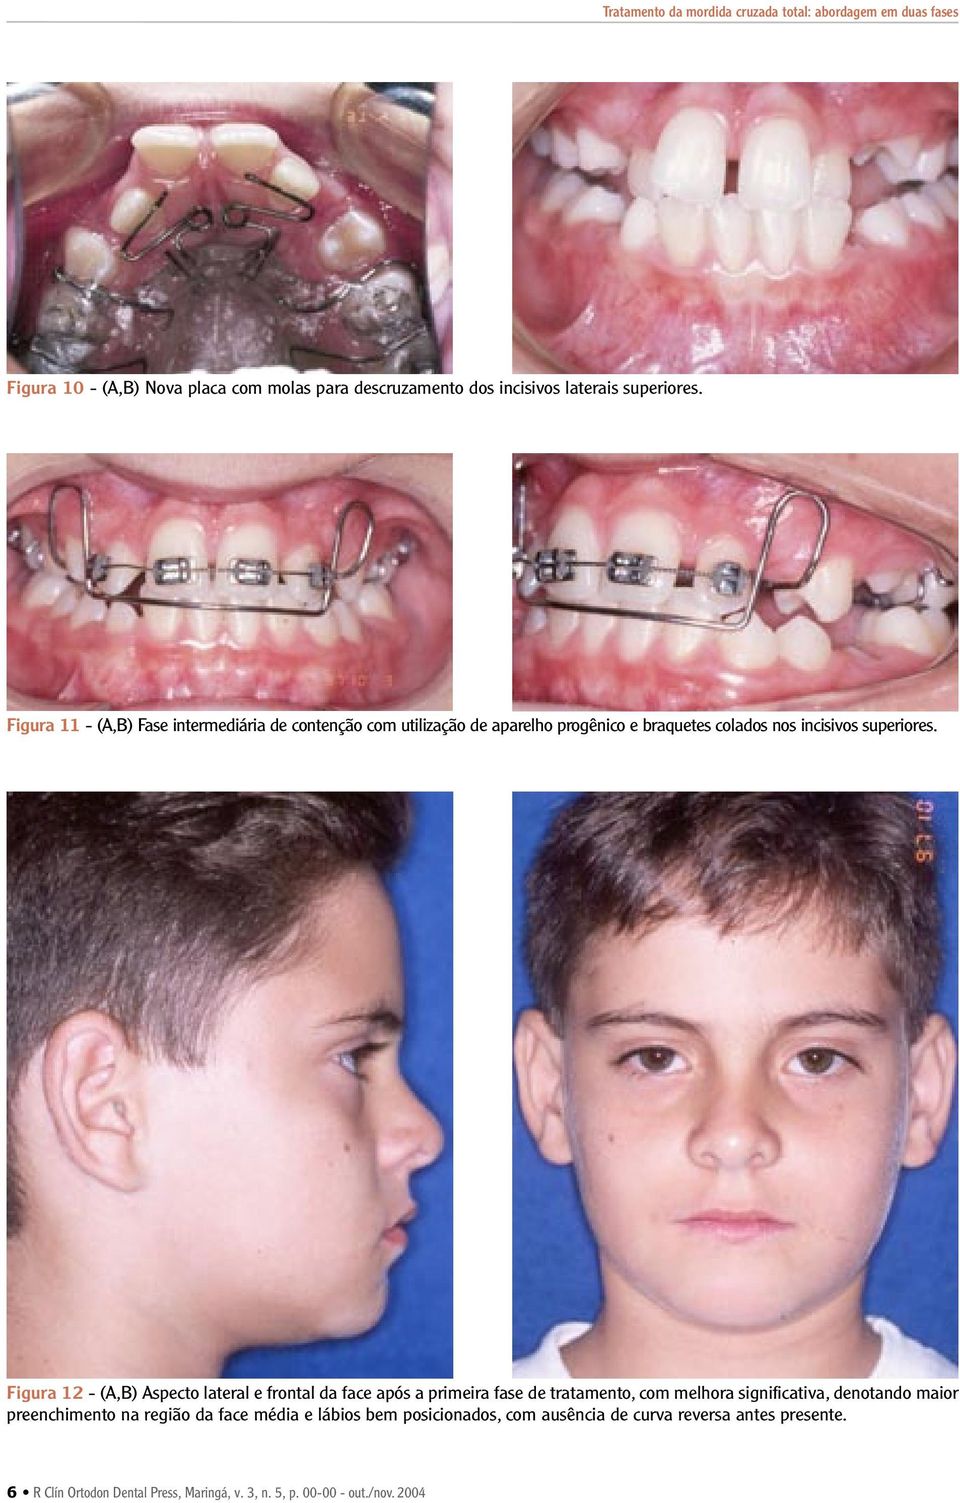 Figura 12 - (A,B) Aspecto lateral e frontal da face após a primeira fase de tratamento, com melhora significativa, denotando maior preenchimento na